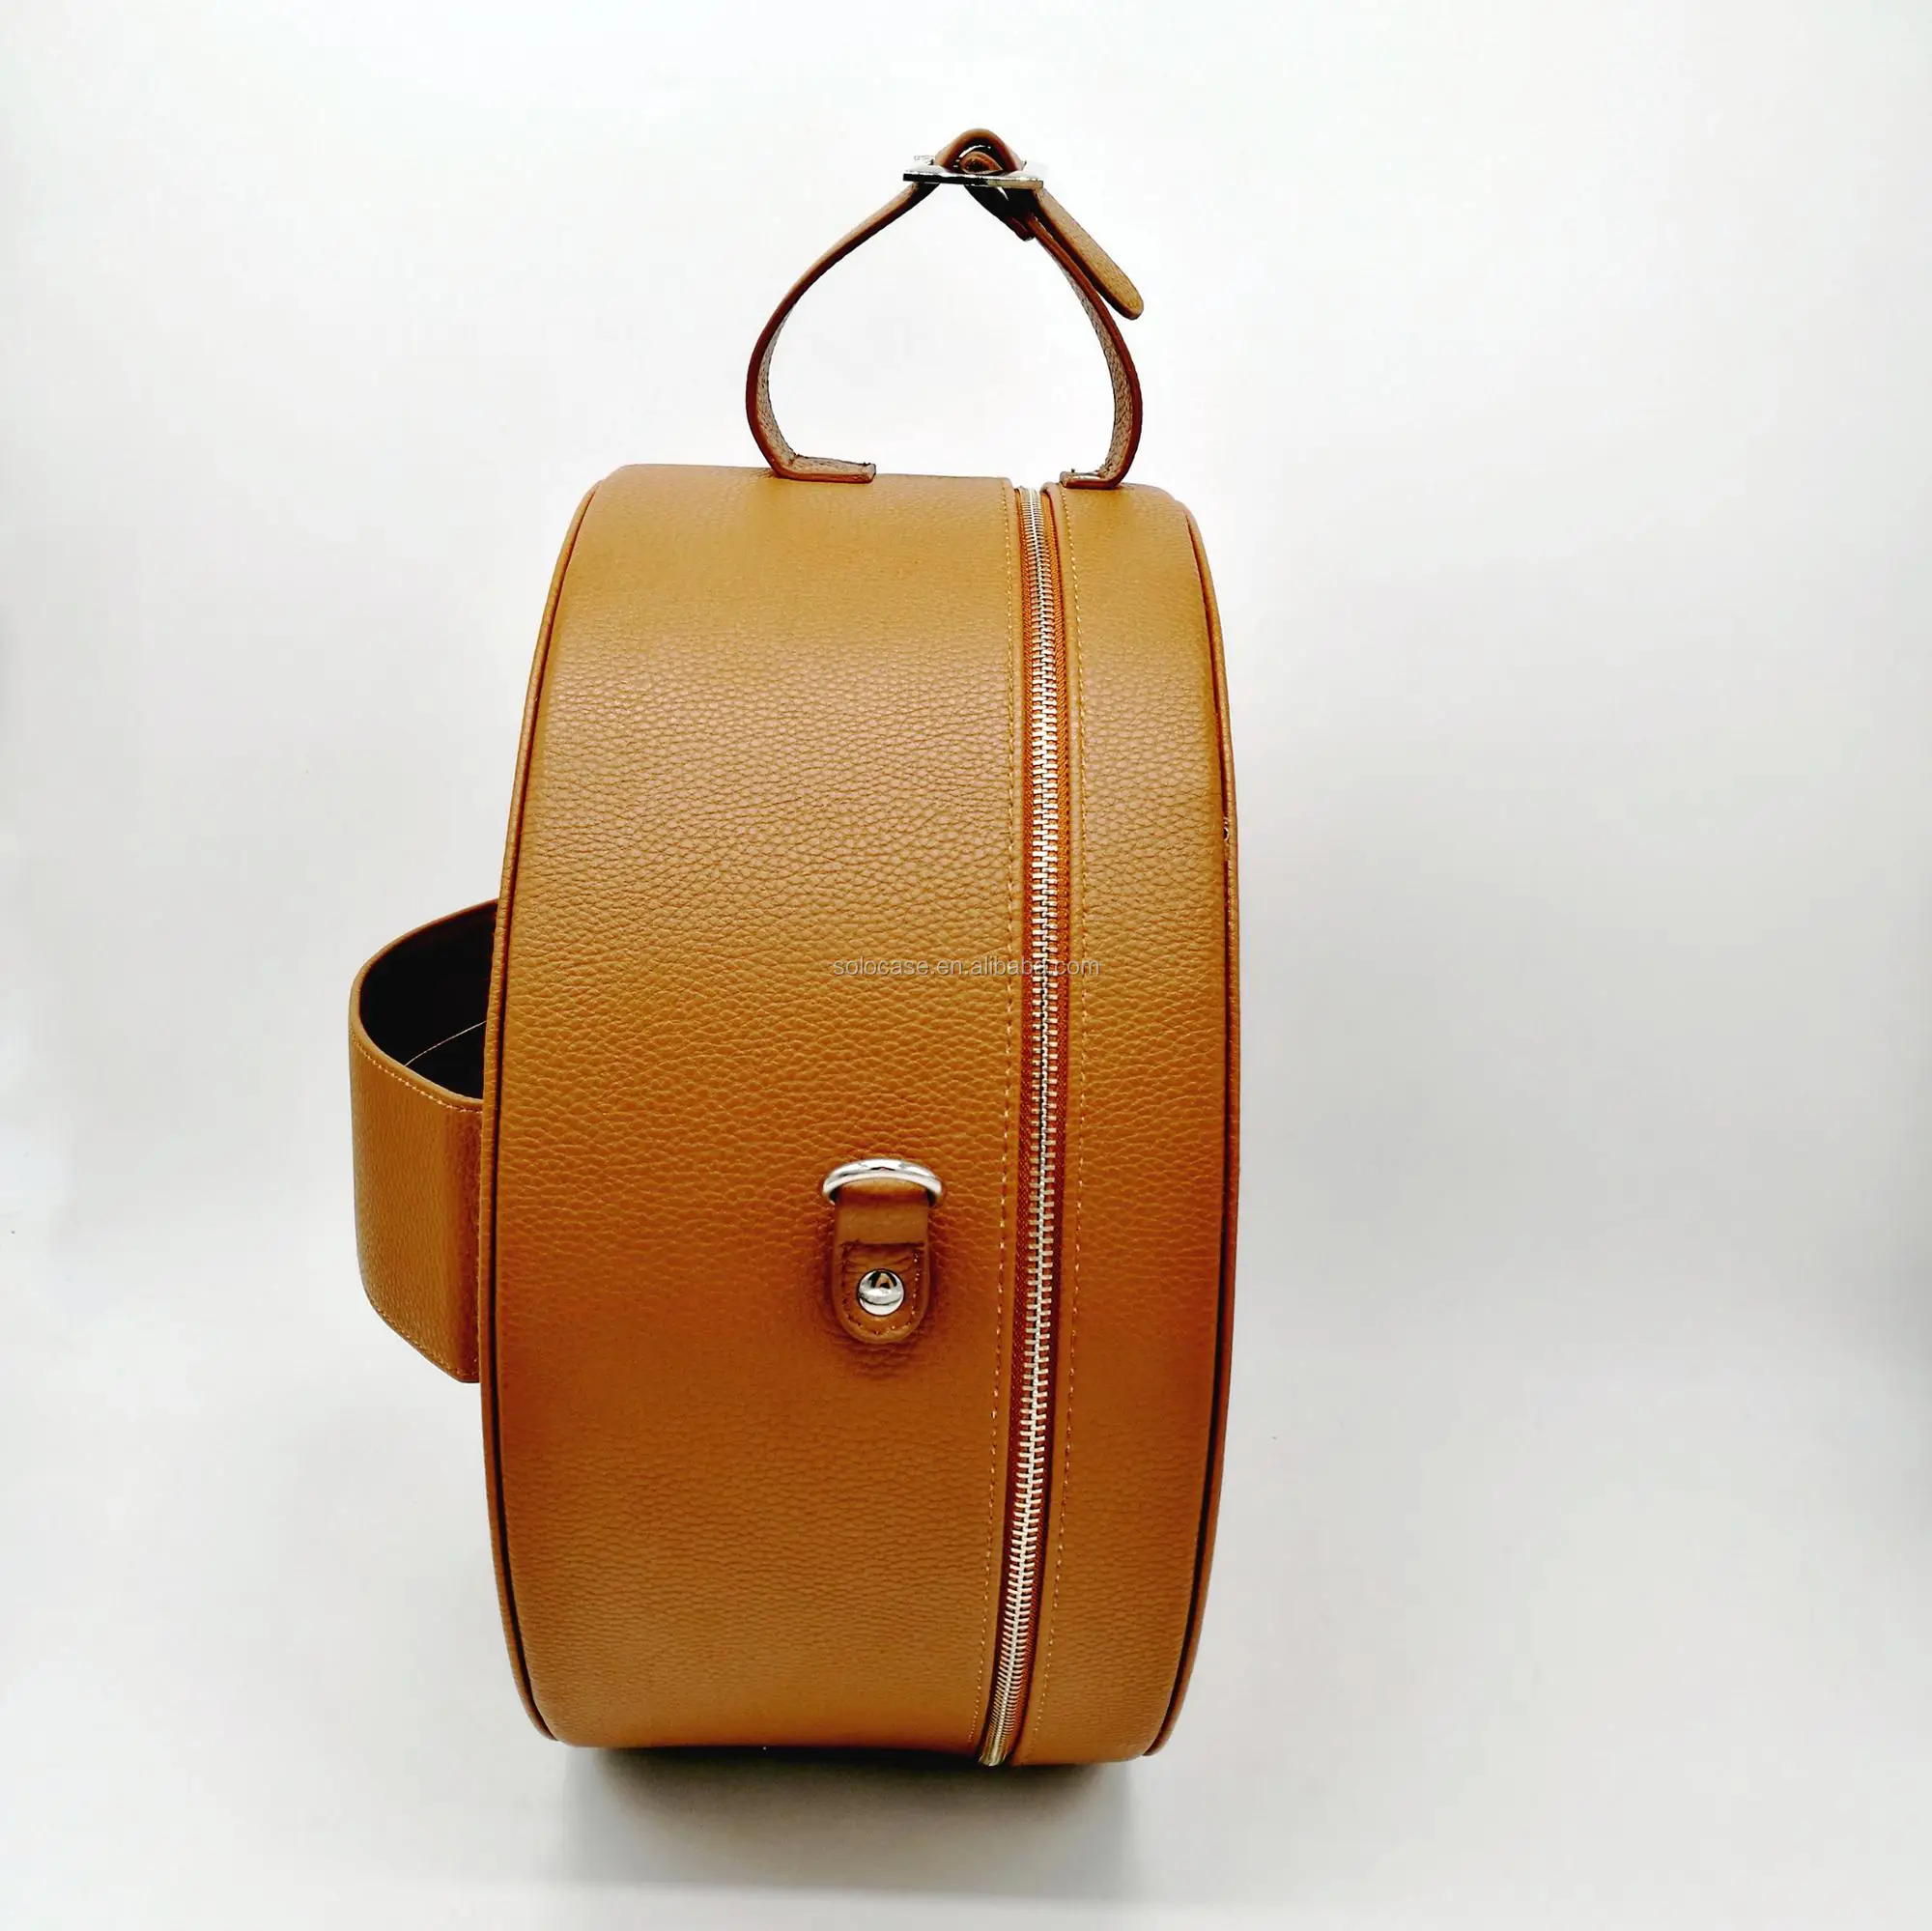 Vintage Hat Box Travel Case With Shoulder Strap Buy